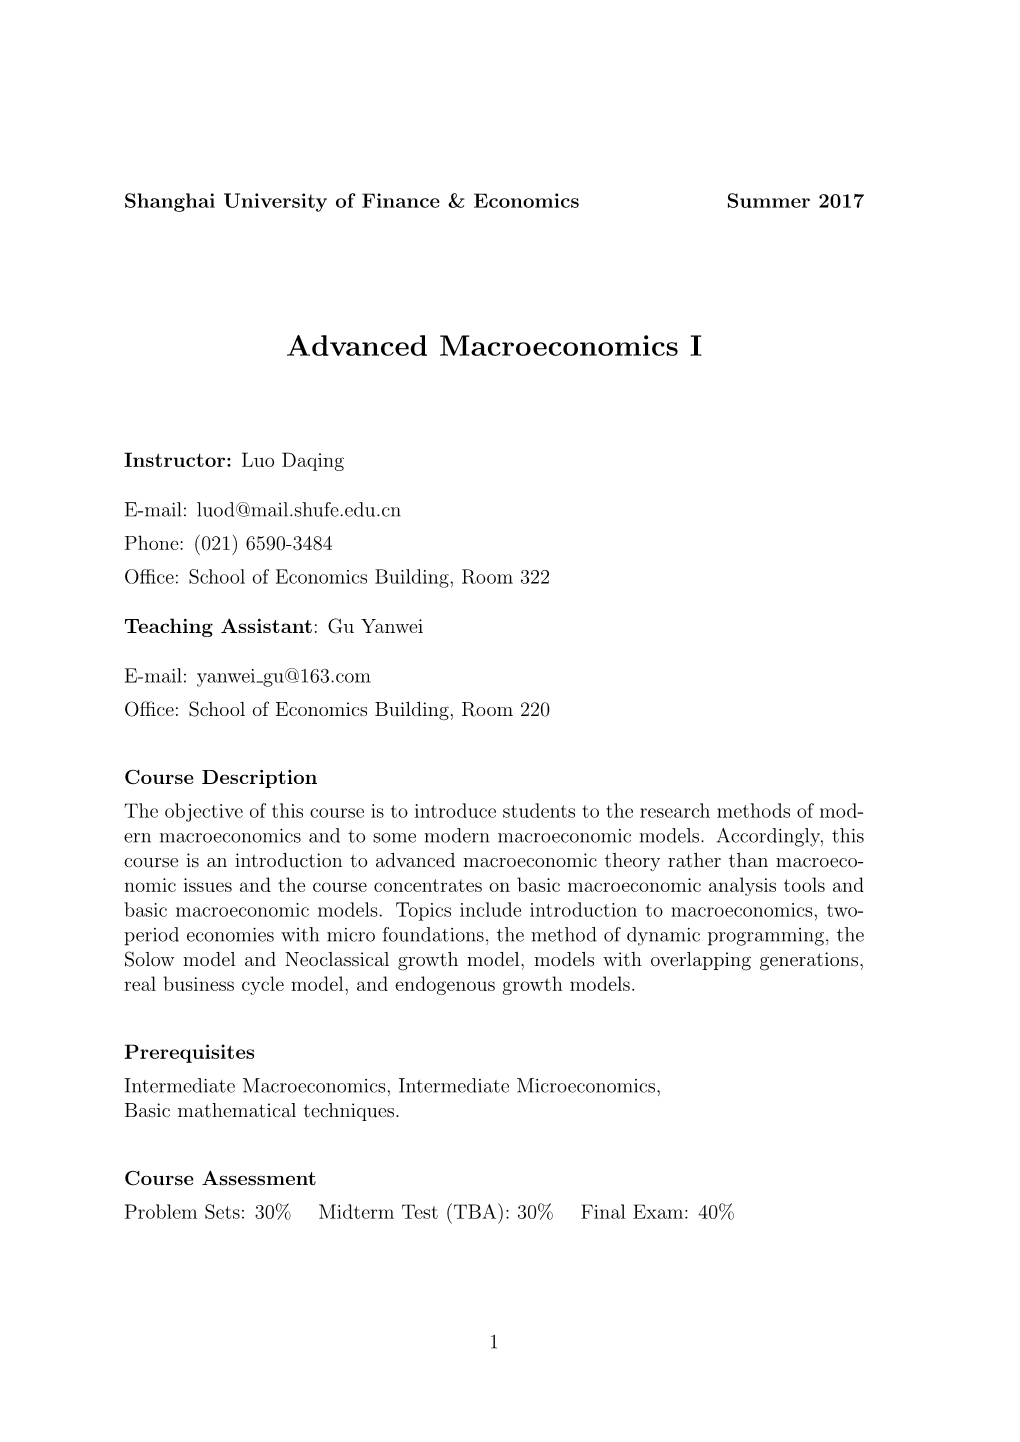 Advanced Macroeconomics I